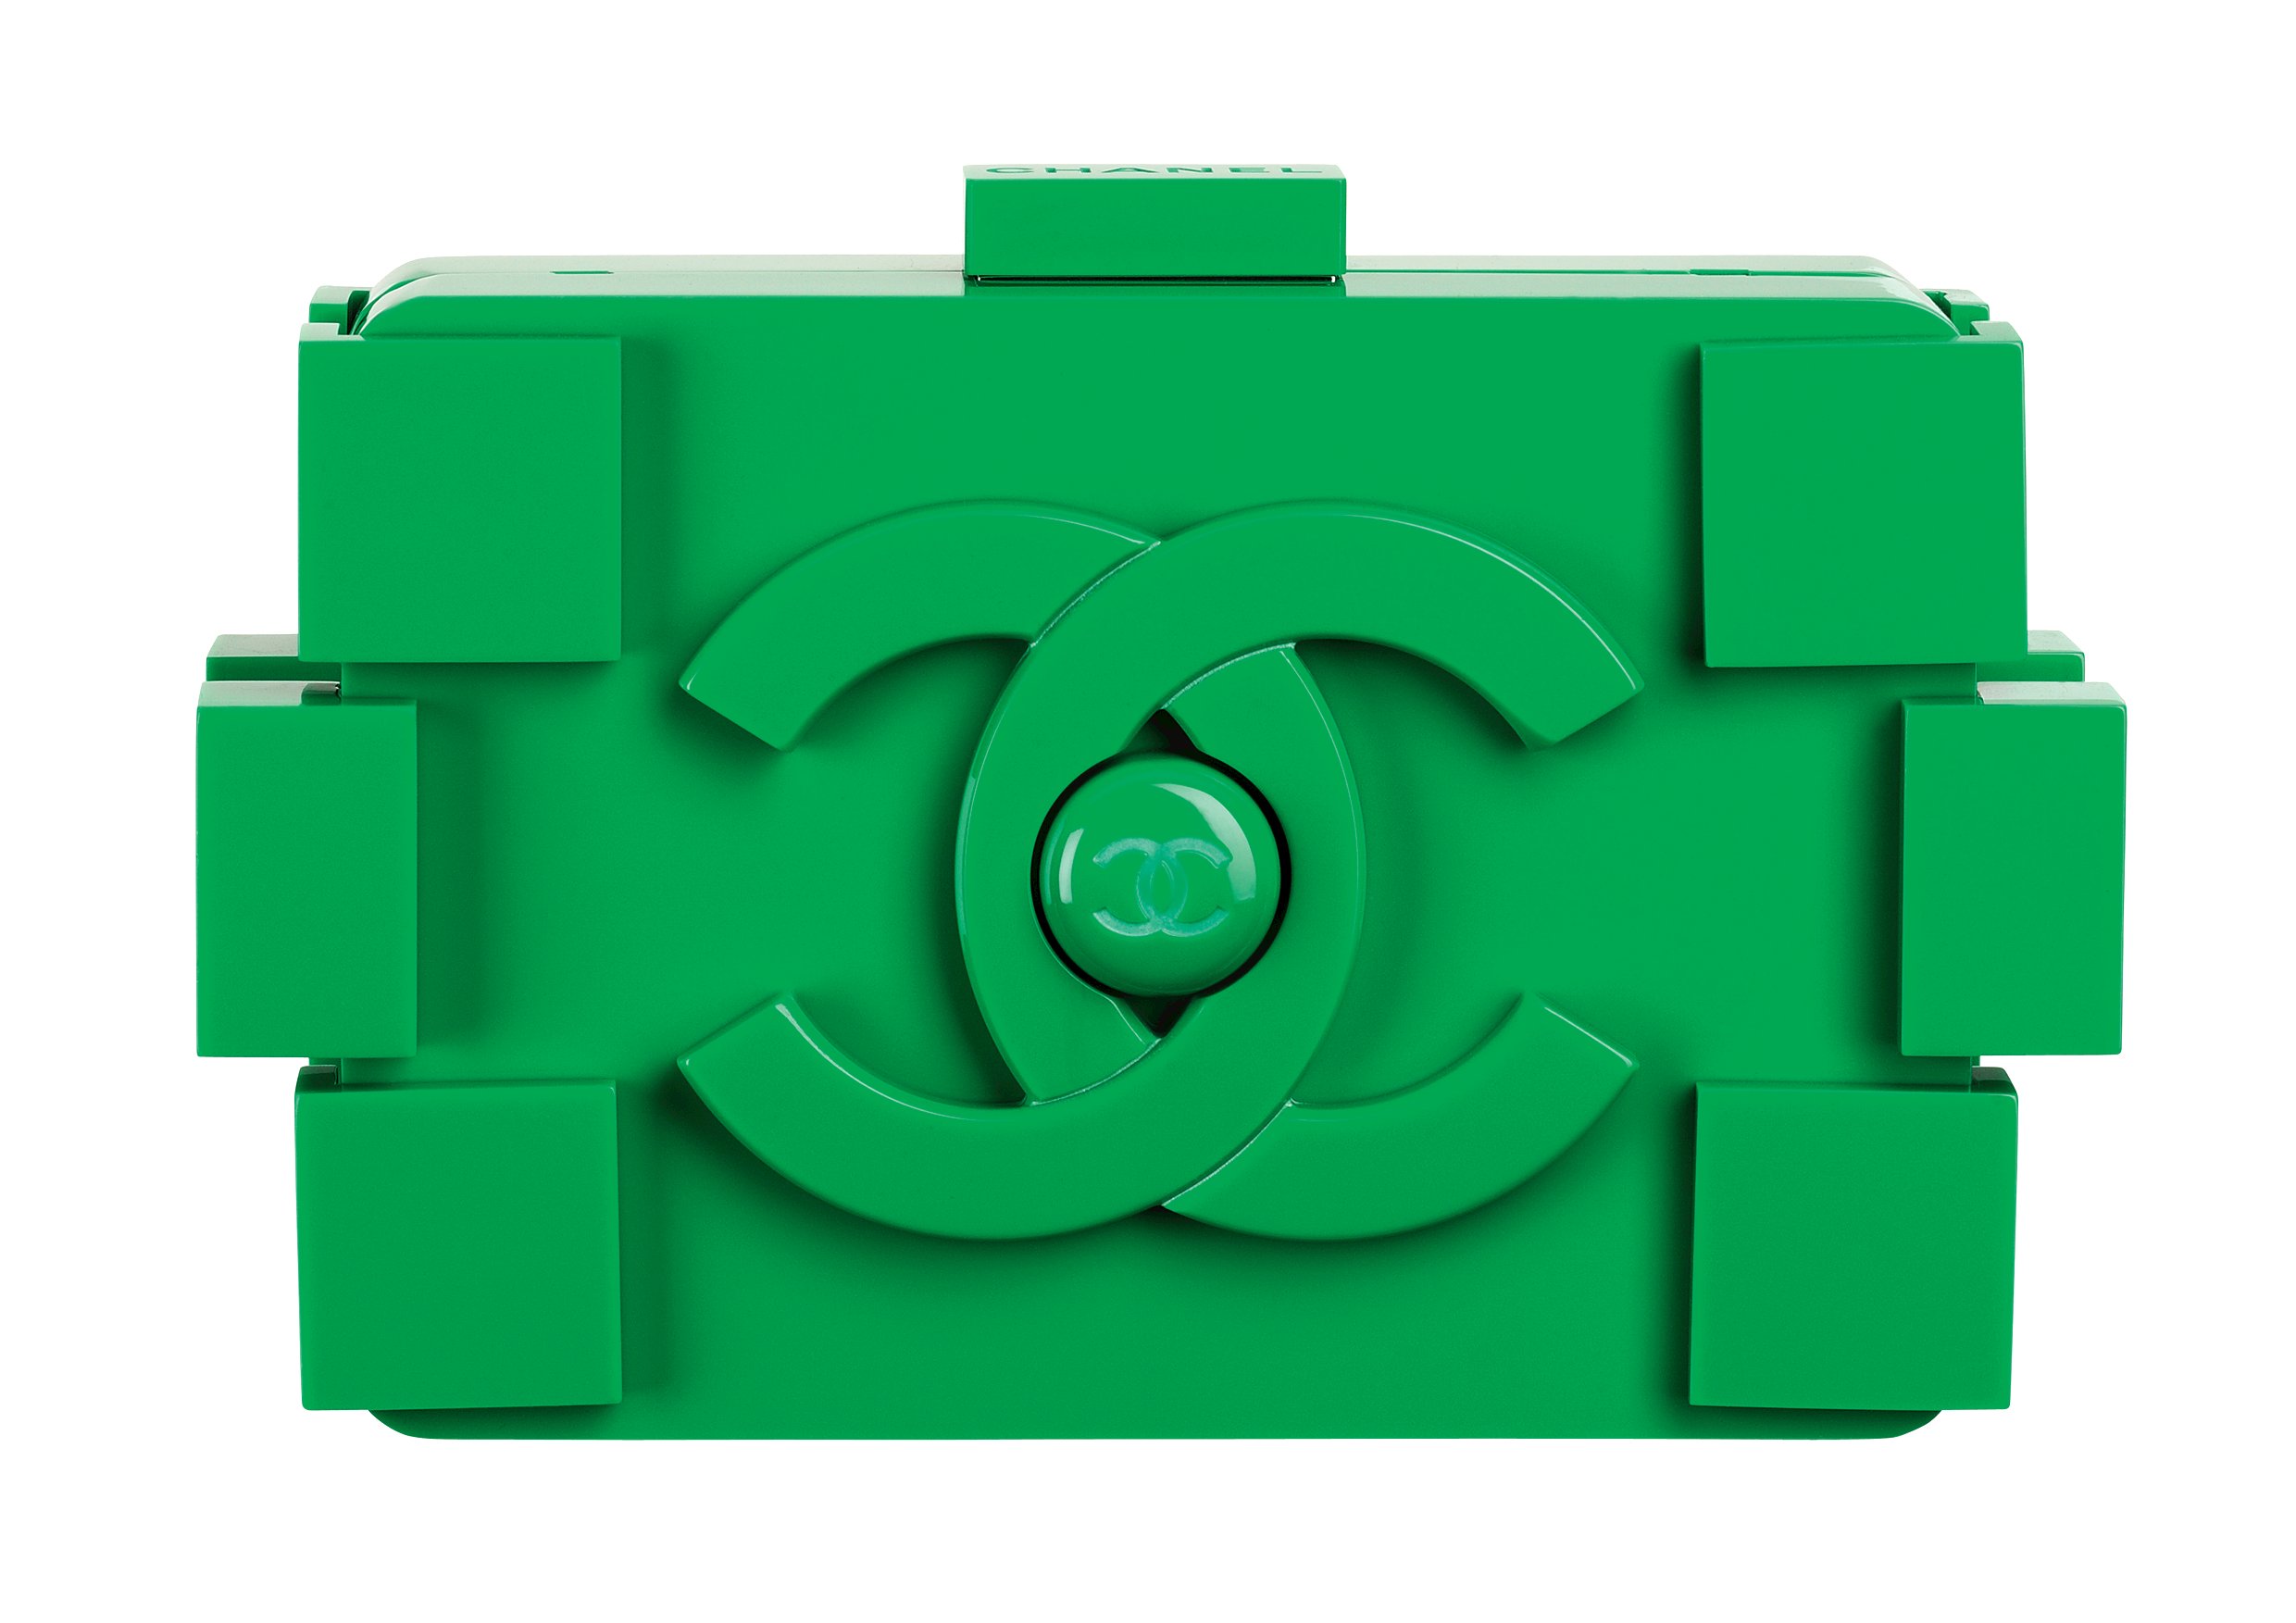 H νέα it-bag: Chanel Lego clutch